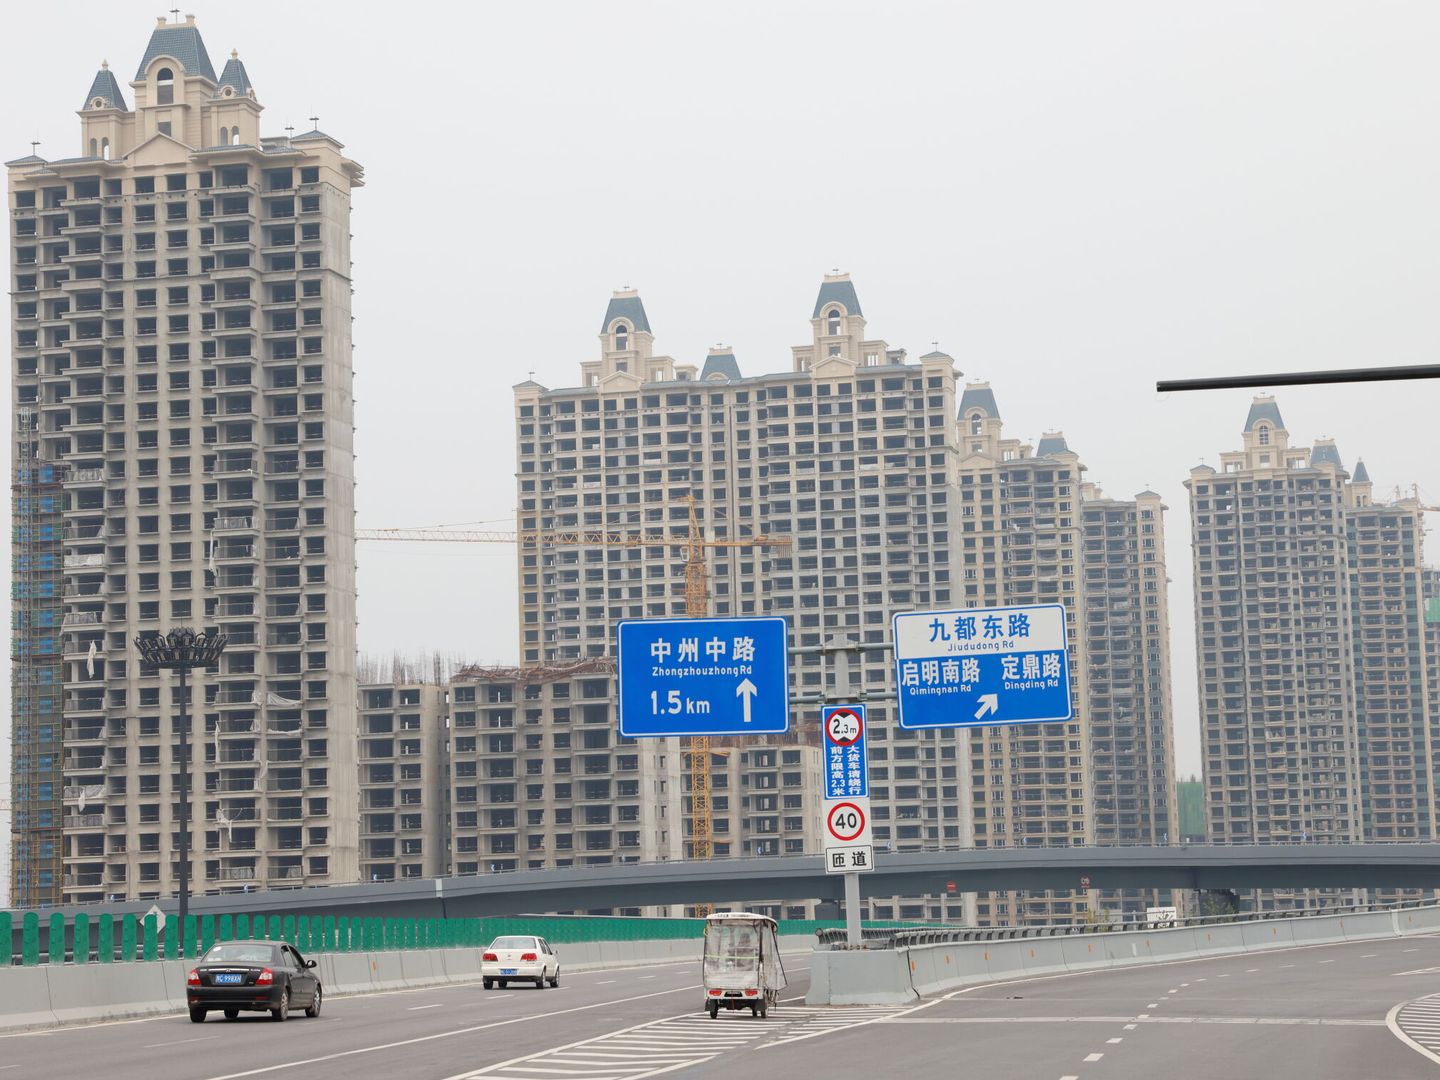 Promoción inmobiliaria desarrollada por China Evergrande en la ciudad de Luoyang. (Reuters)